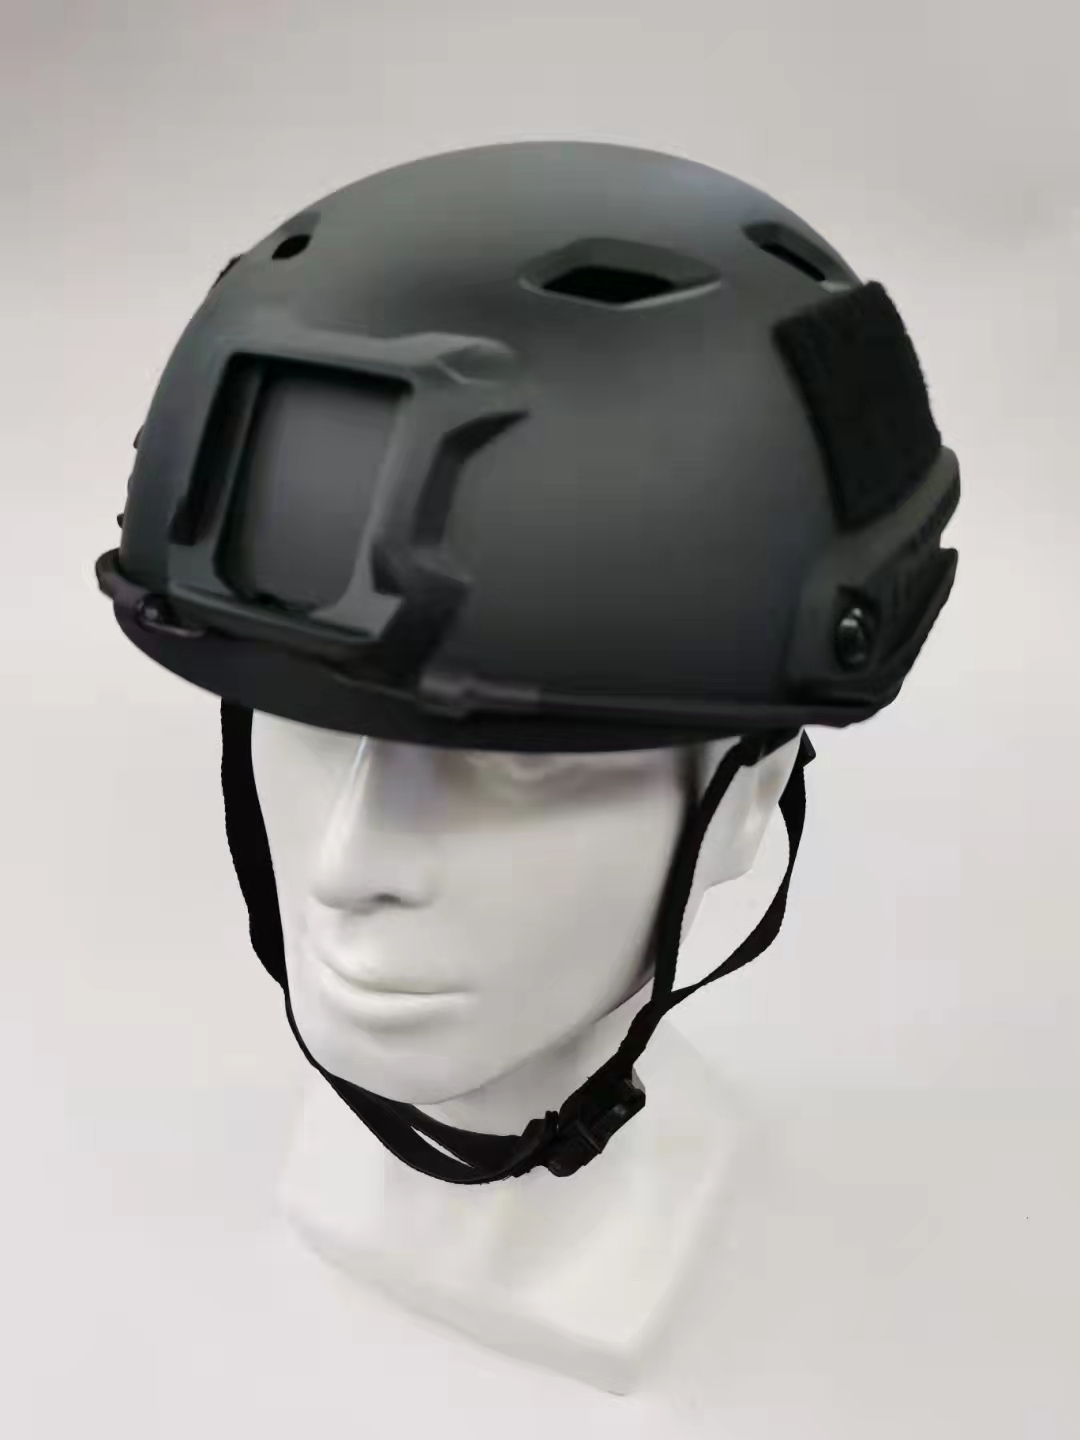 plastic replicea fast helmet for paratroopers